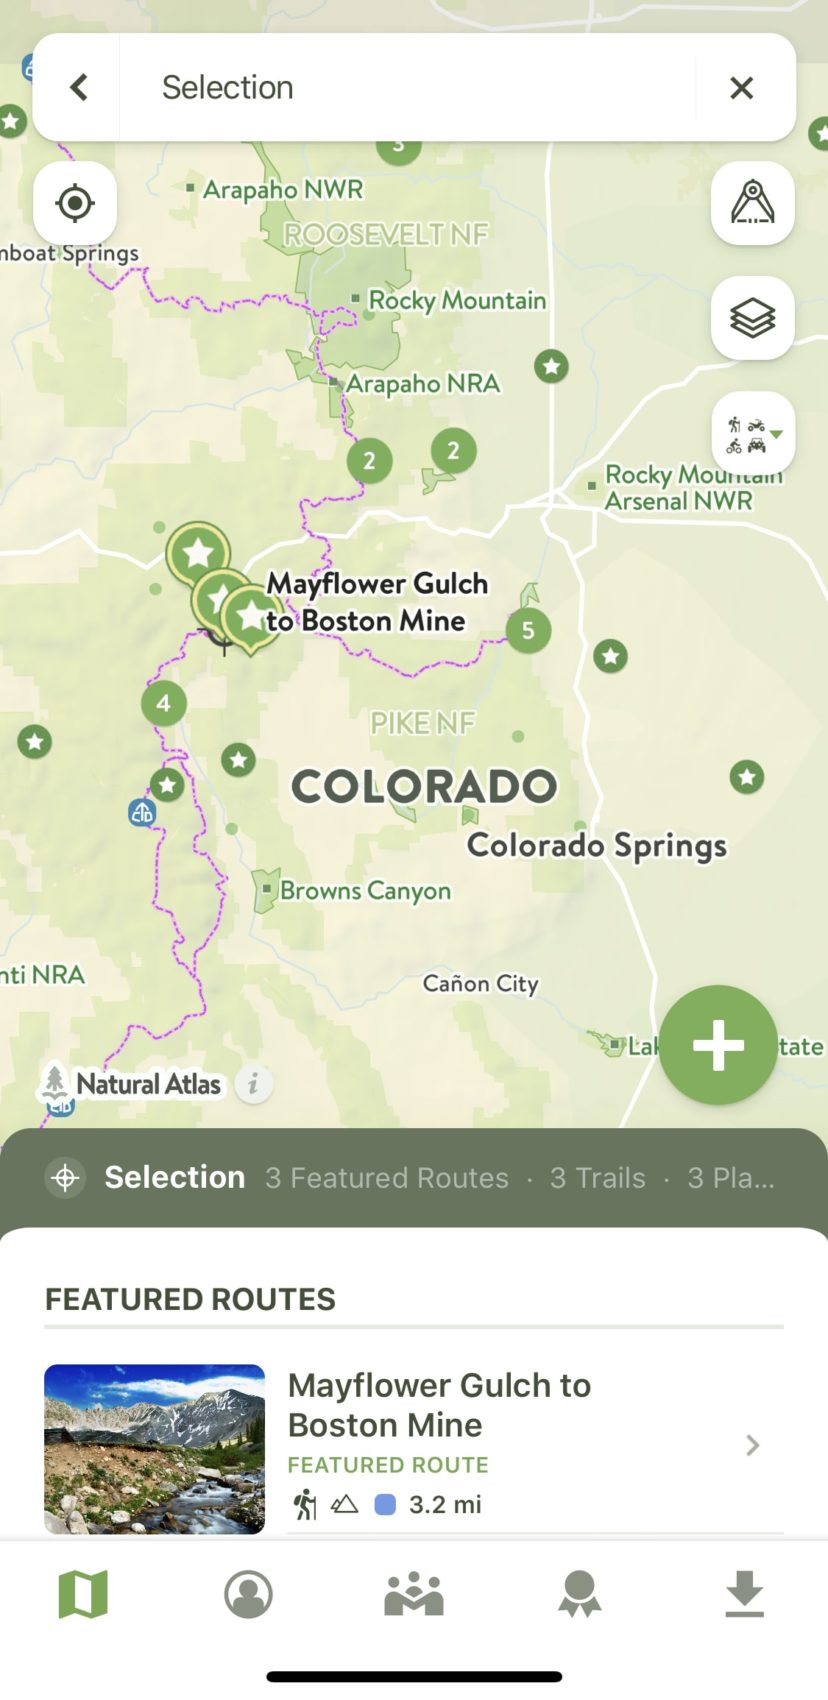 colorado, trails, free app, cotrex